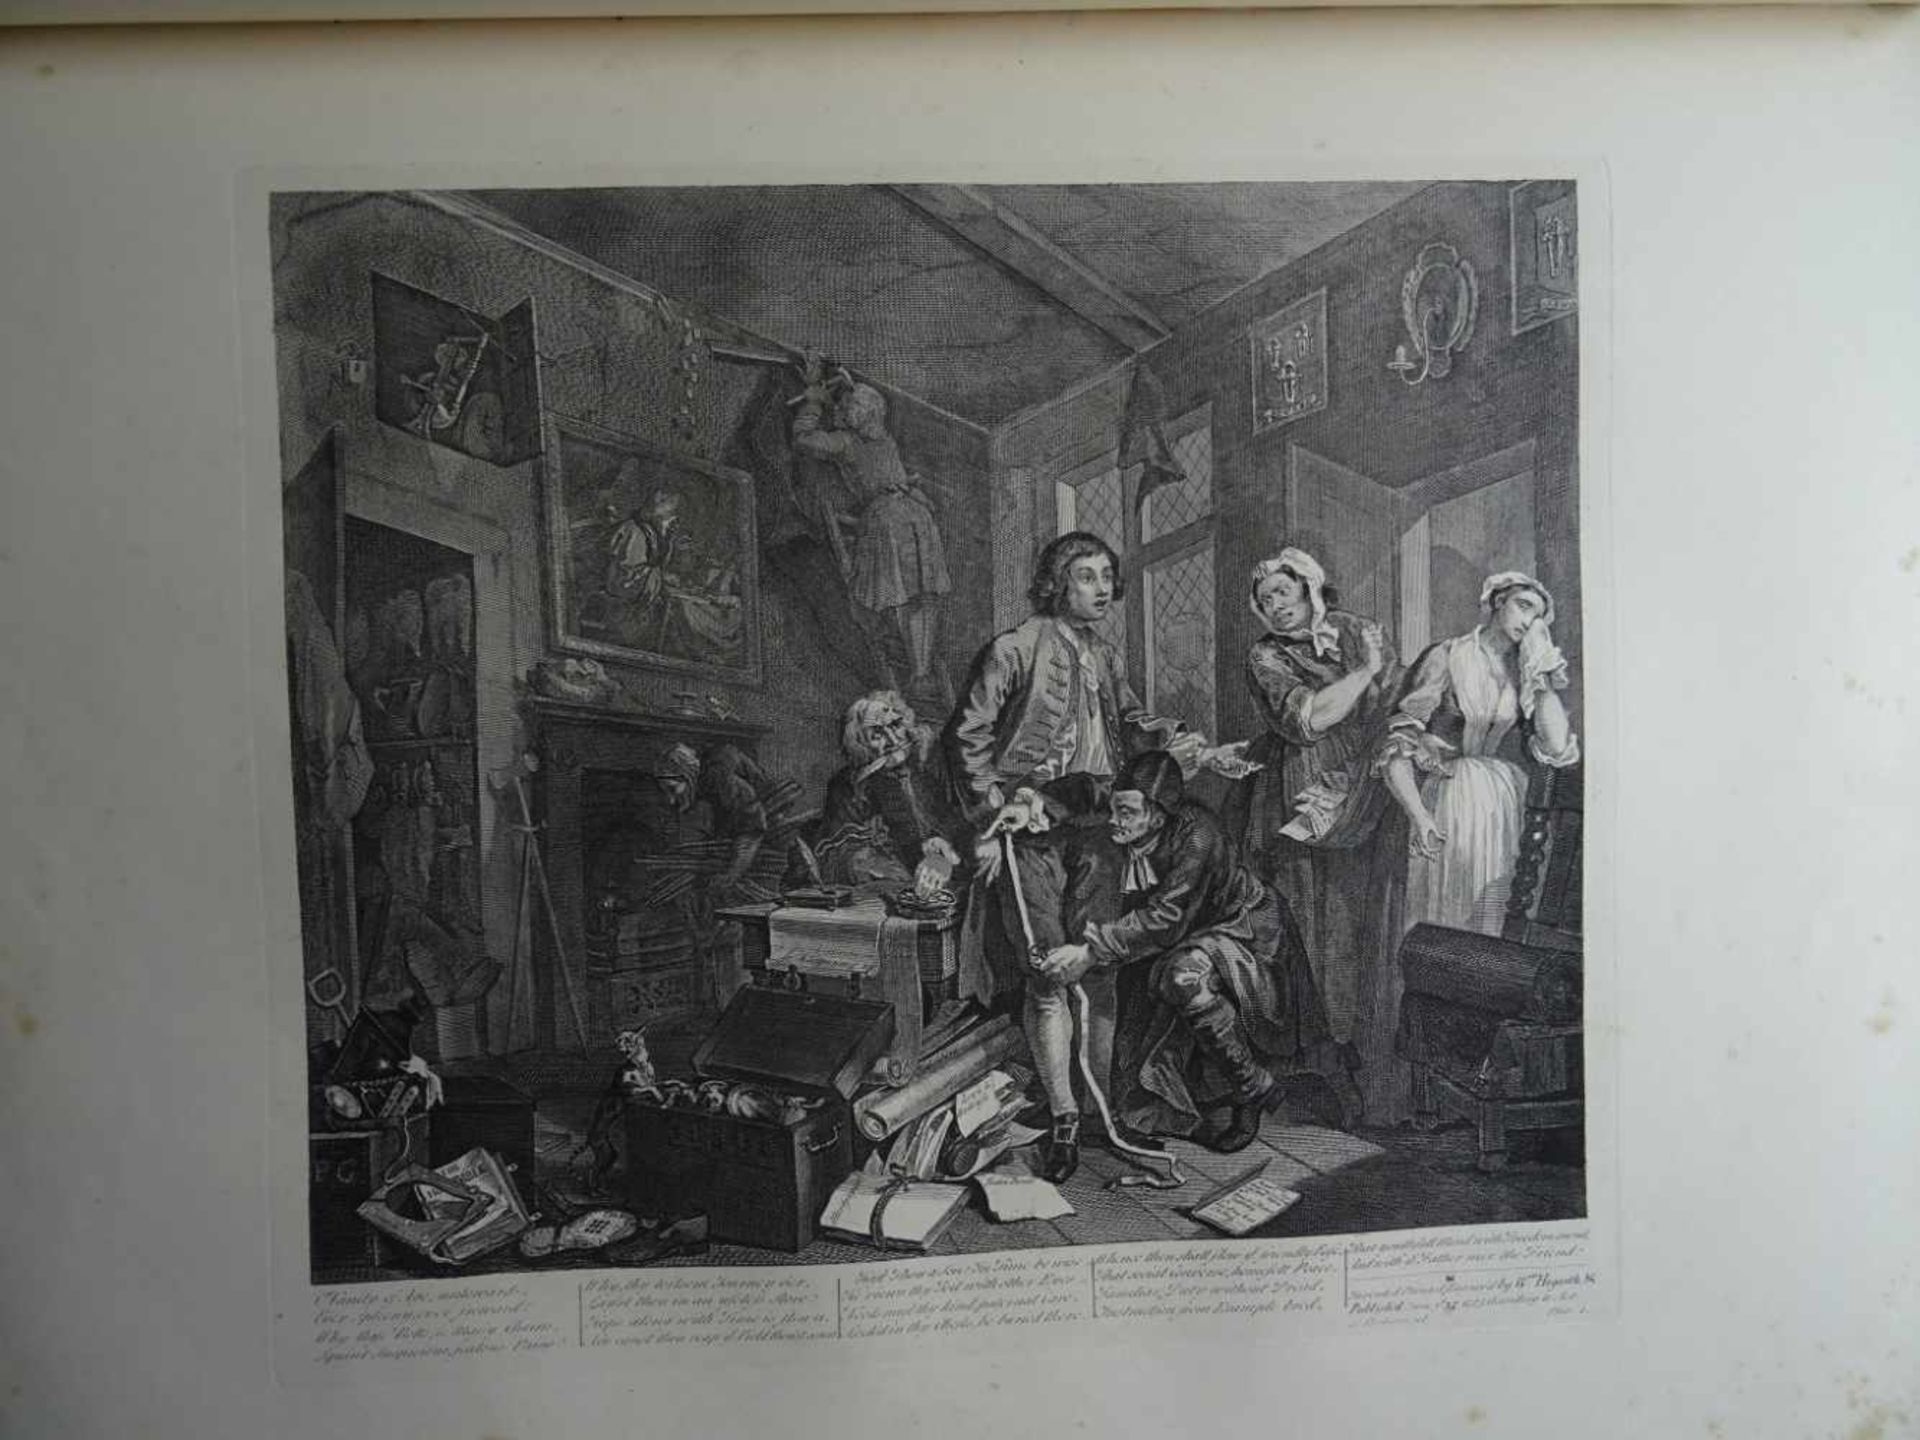 Kunst.- Hogarth, W.The Works of William Hogarth, from the original plates restored by James Heath... - Bild 2 aus 5